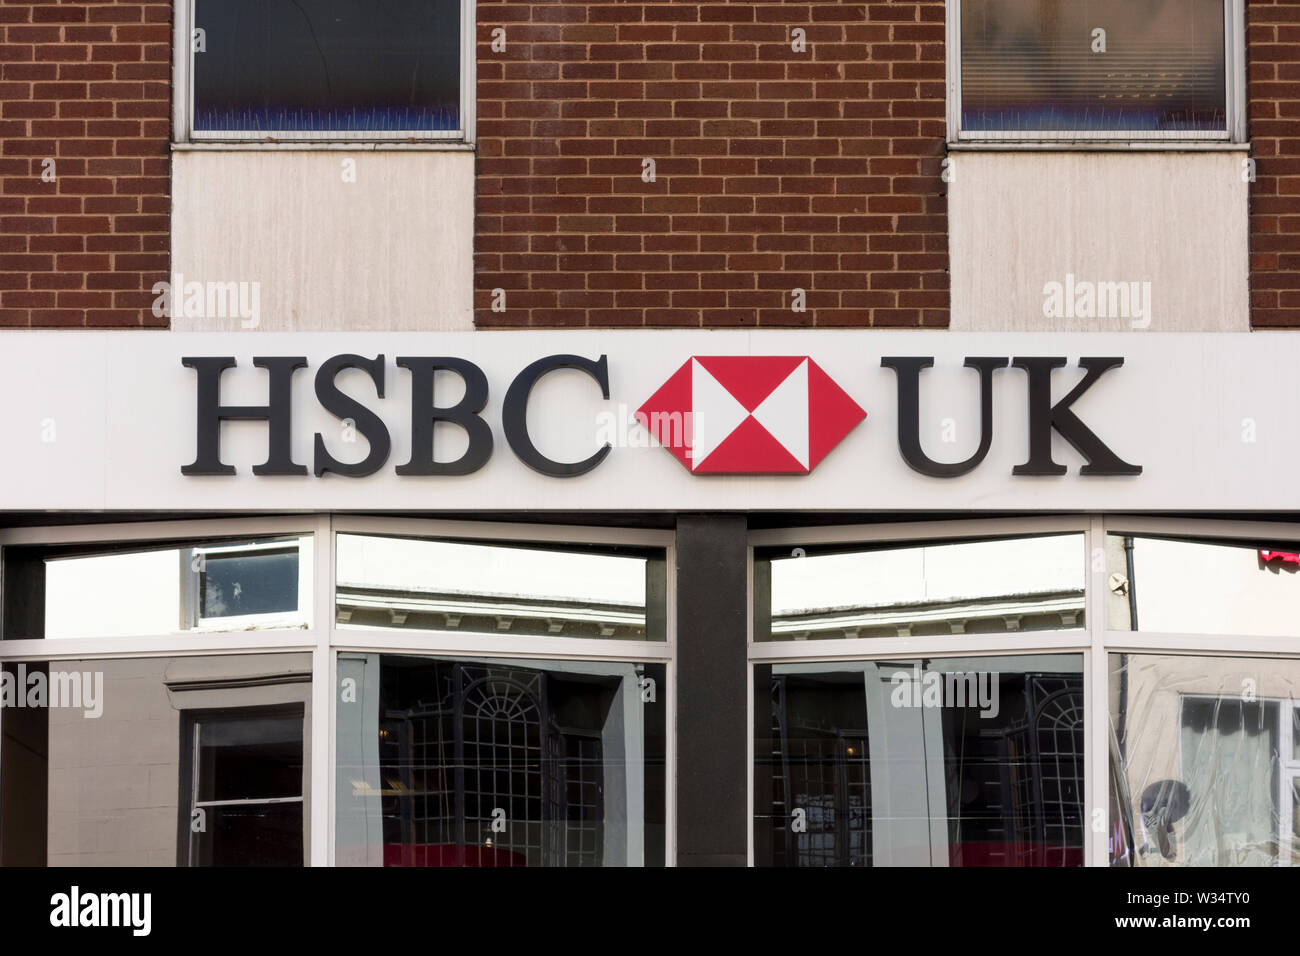 HSBC sign, Stourbridge, West Midlands, UK Stock Photo